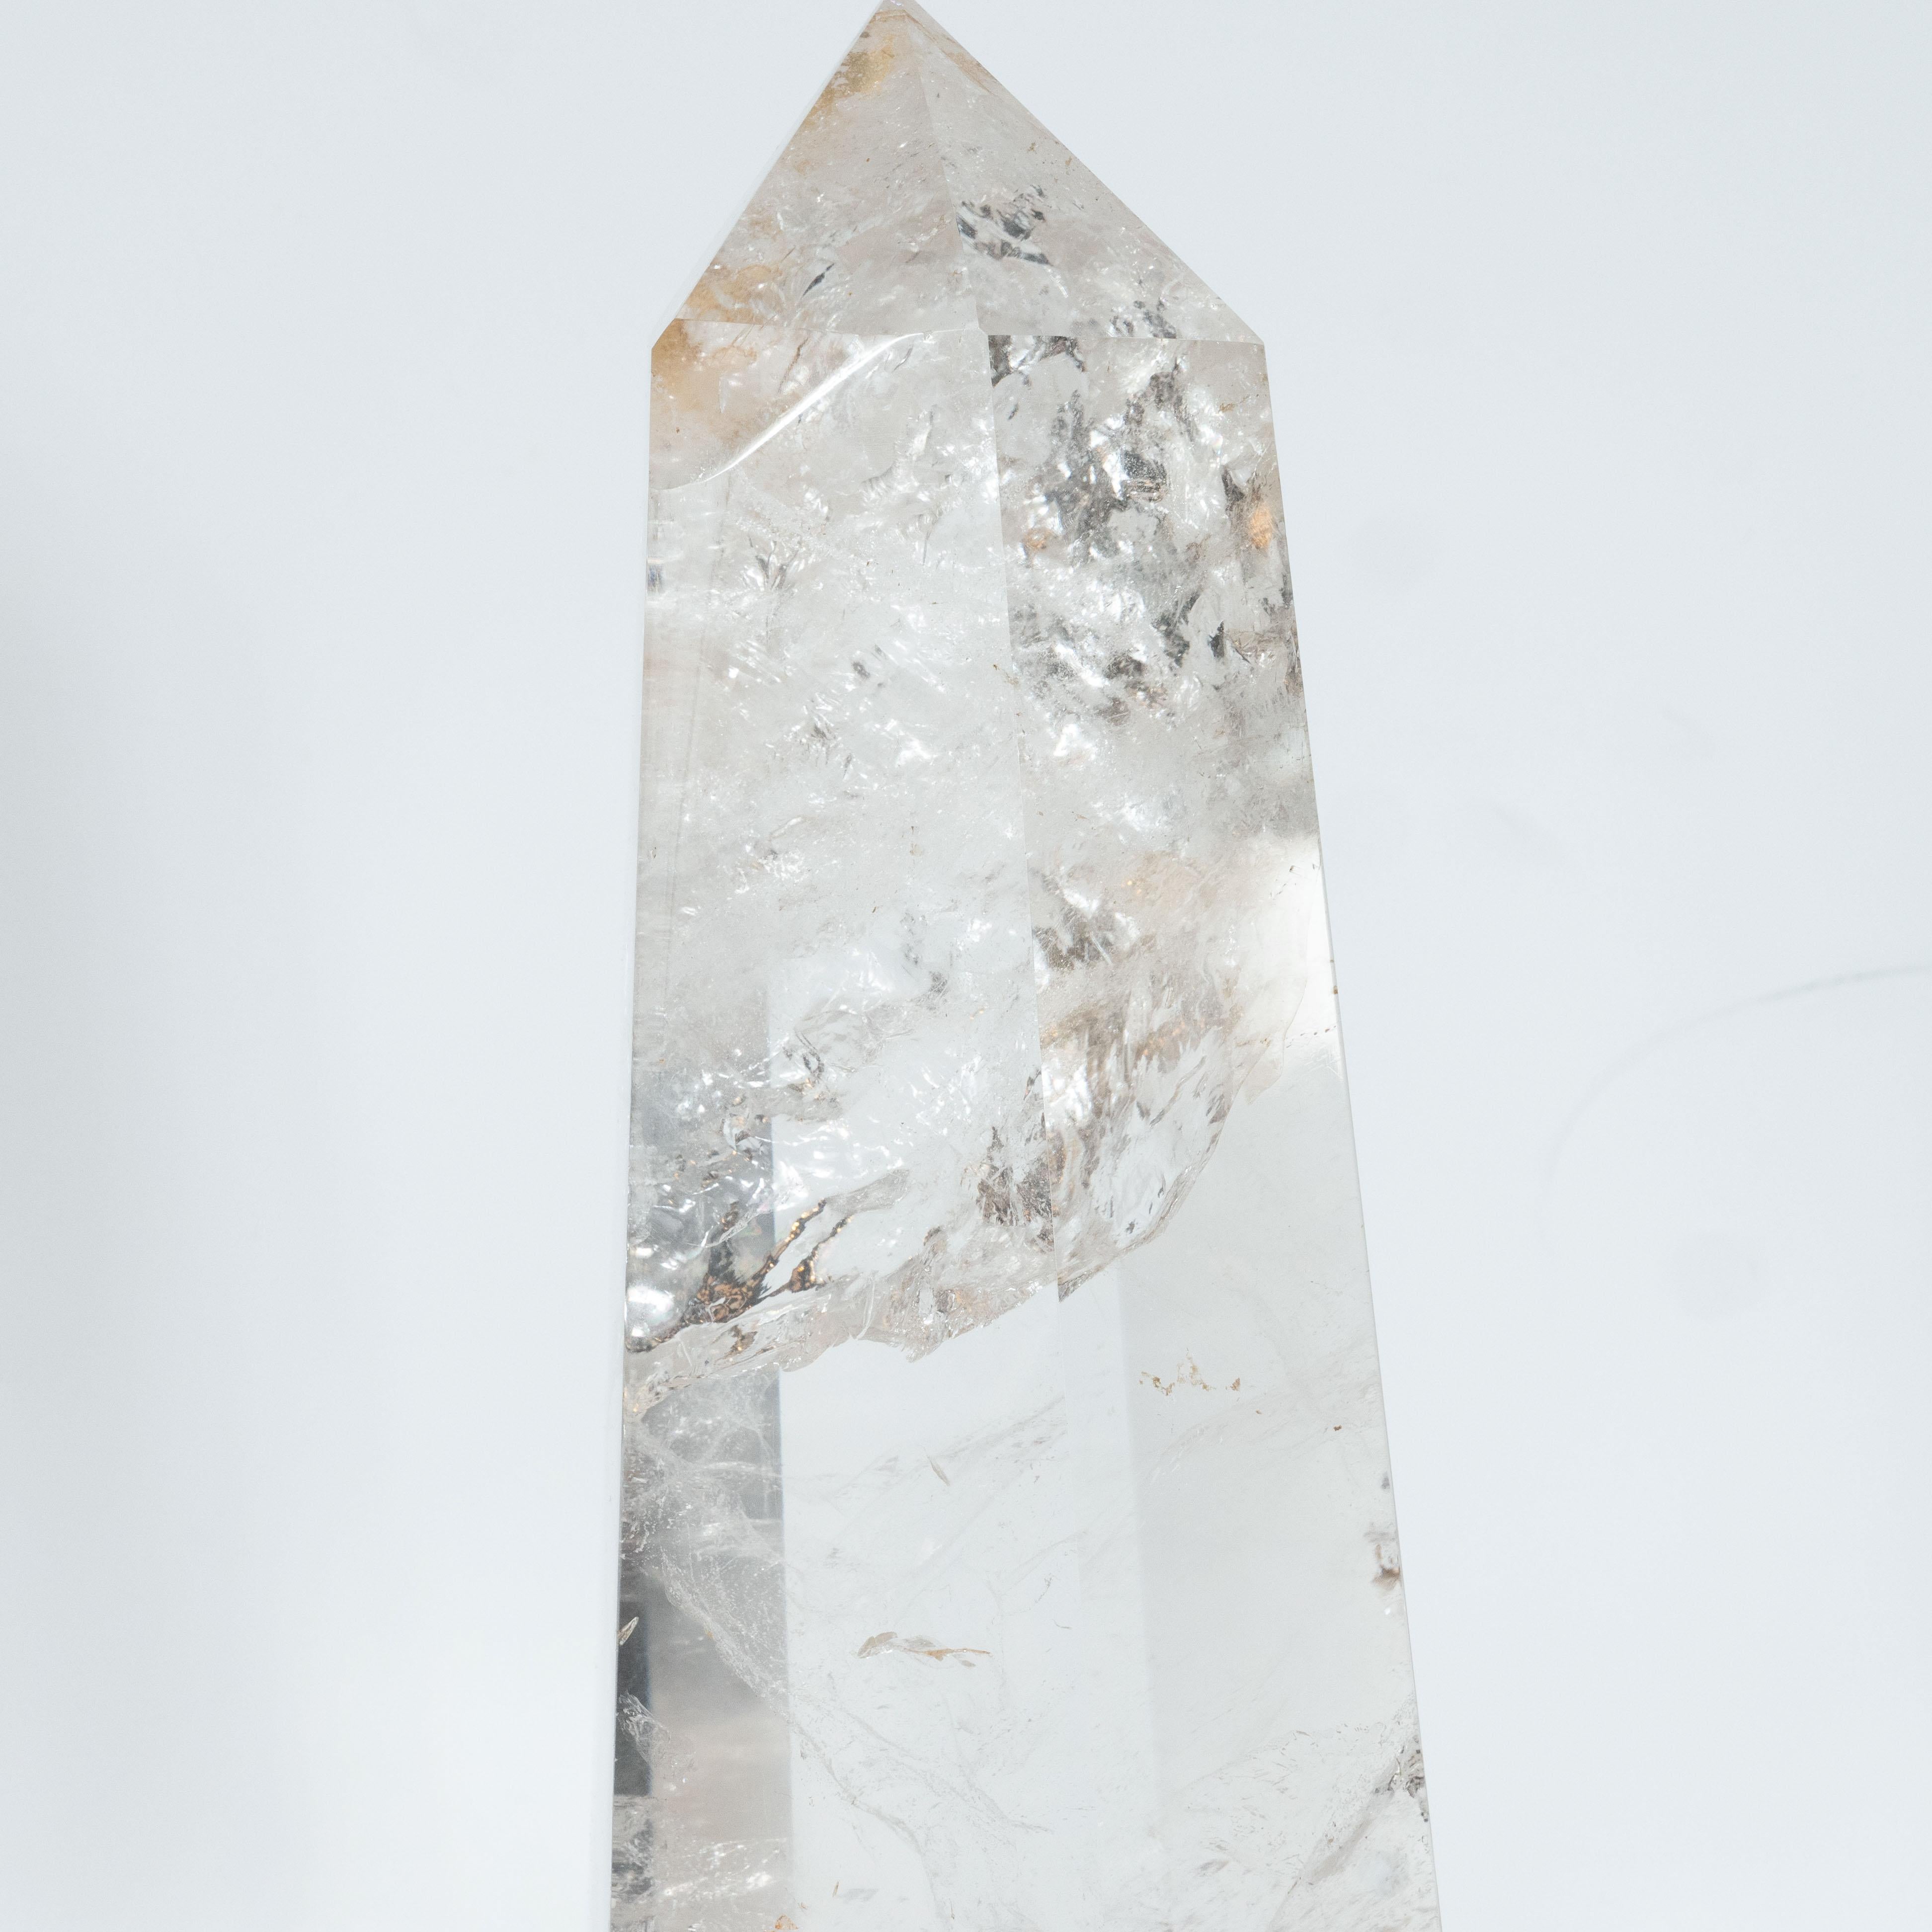 Modernist Faceted Translucent Rock Crystal Obelisk on Volumetric Lucite Base 1